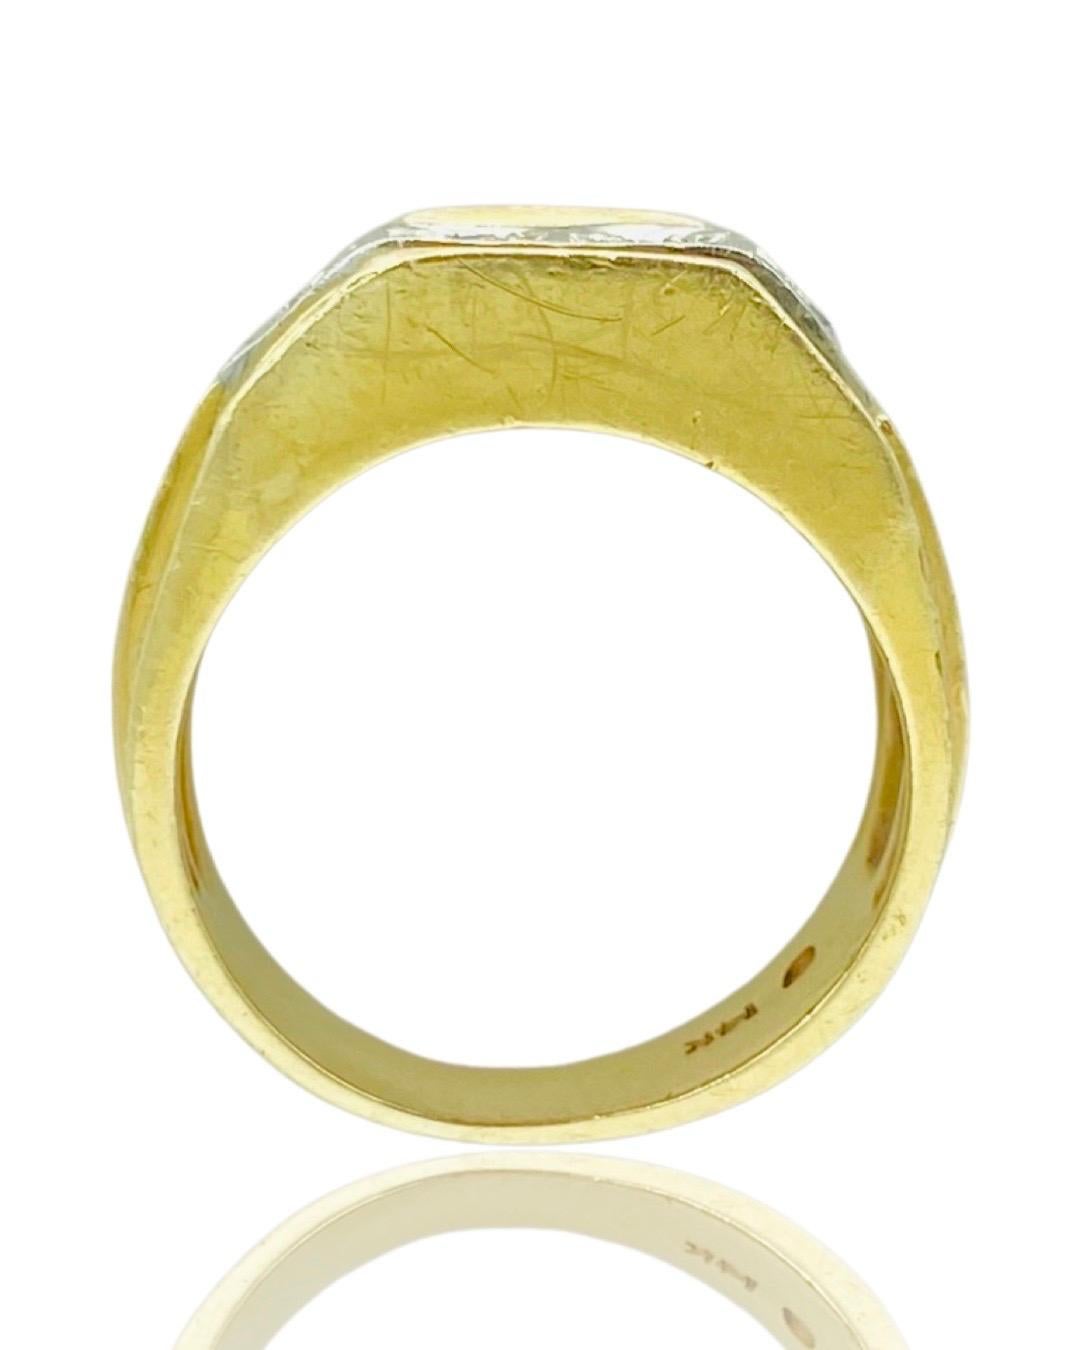 Vintage Men’s Two-Tone 0.20 Carat Diamond Ring 14k Gold 1